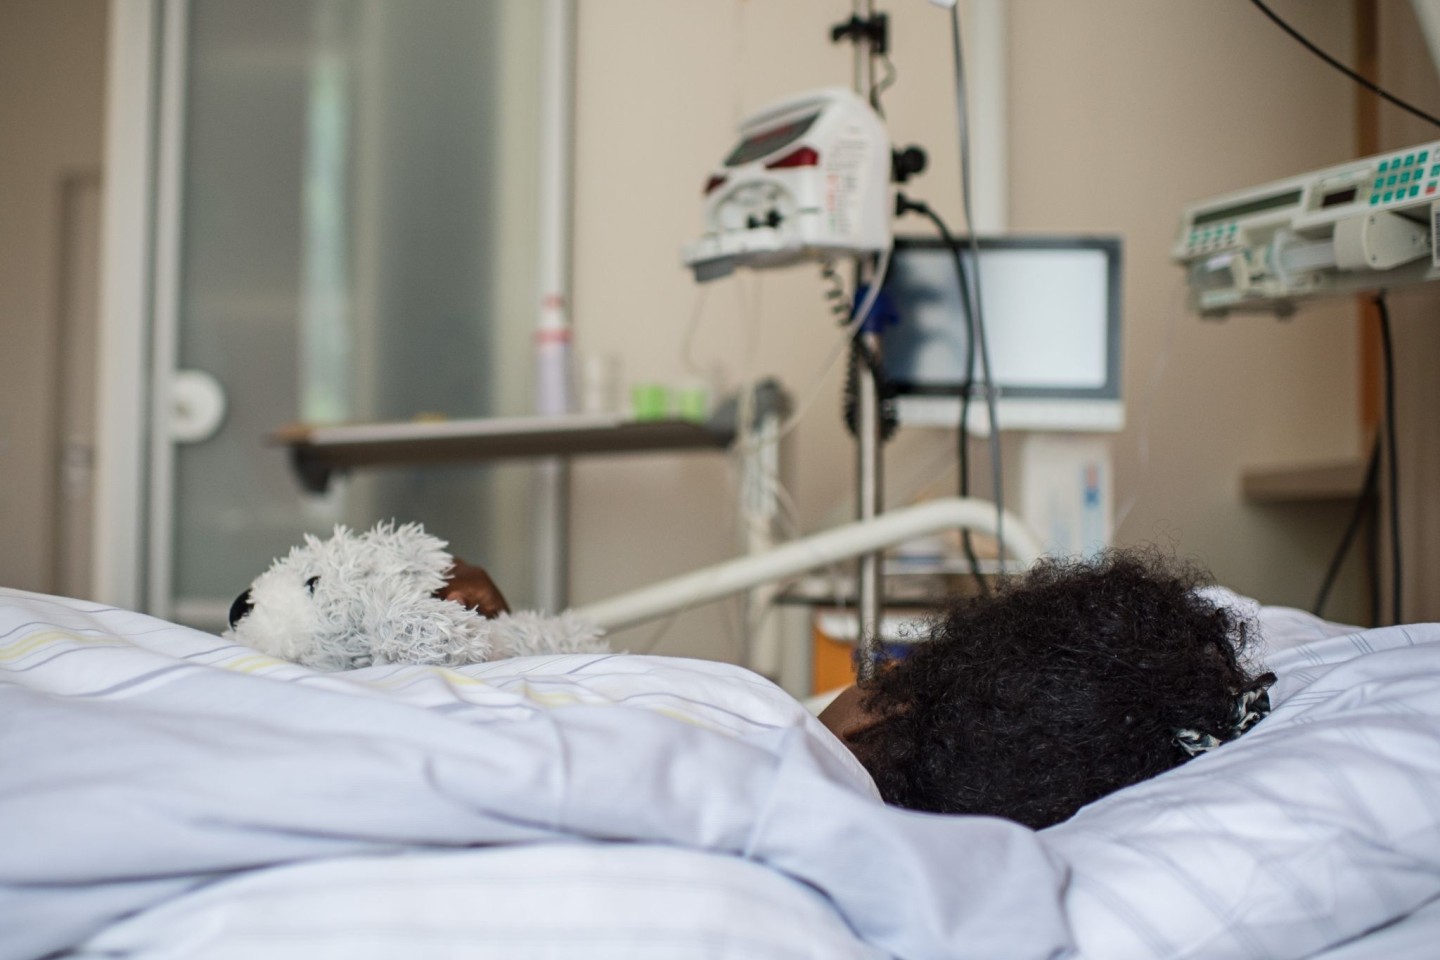 Eine Patientin aus Somalia wird in Berlin aufgrund der schweren Folgen einer Genitalverstümmelung behandelt, die sie als kleines Kind erlitten hat.